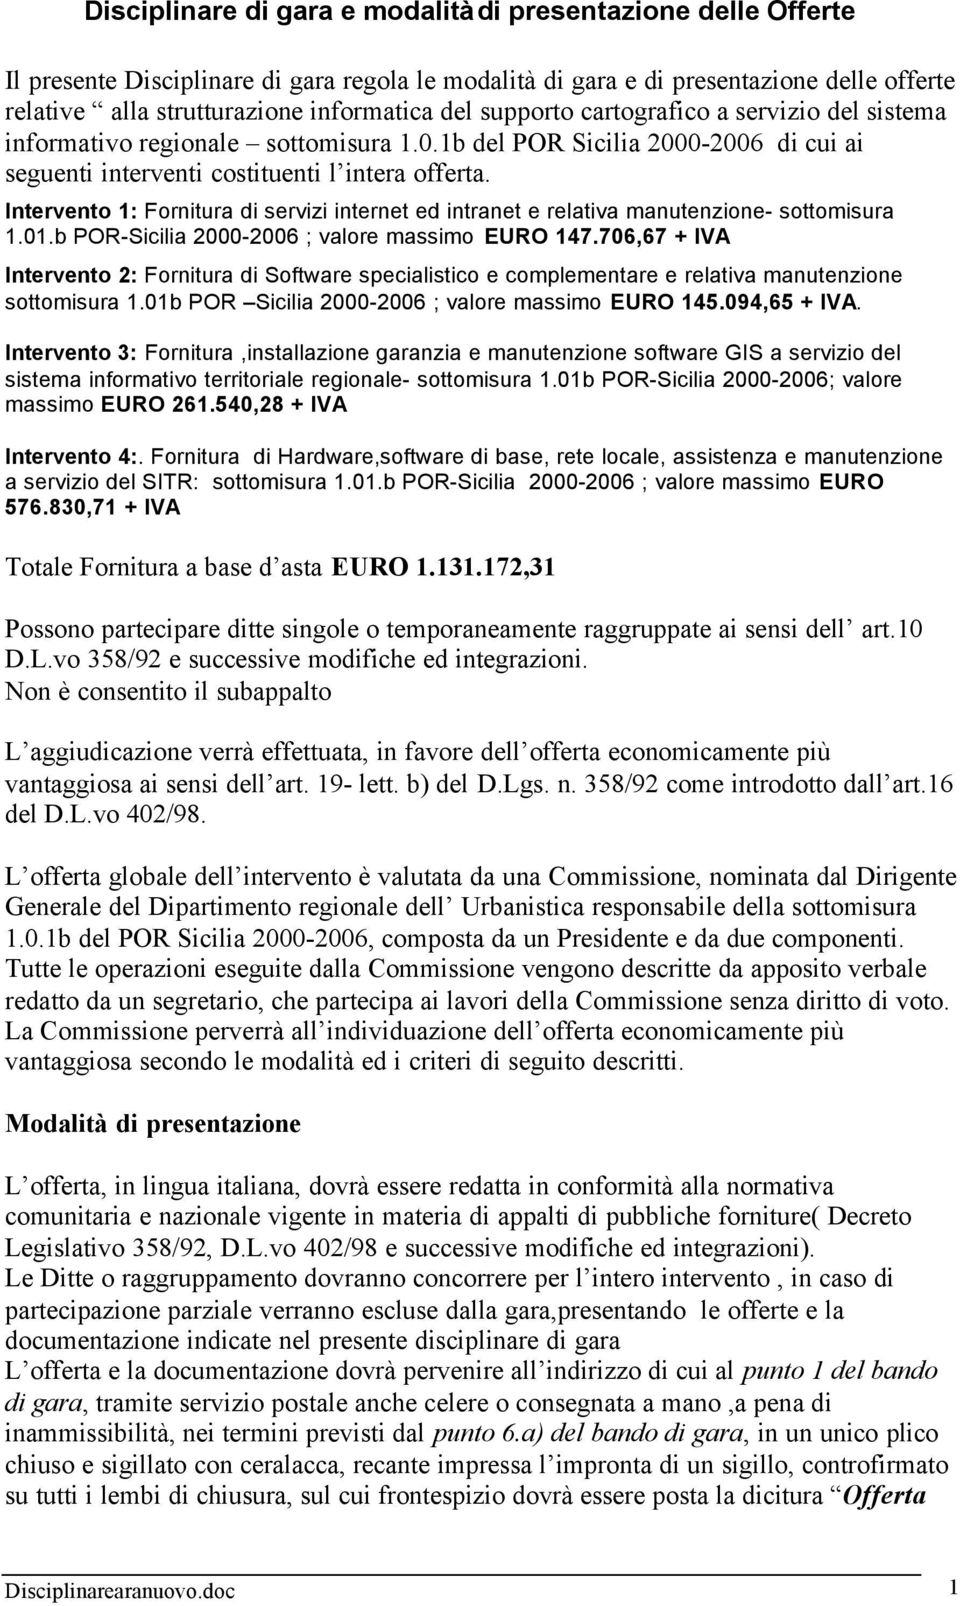 Intervento 1: Fornitura di servizi internet ed intranet e relativa manutenzione- sottomisura 1.01.b POR-Sicilia 2000-2006 ; valore massimo EURO 147.